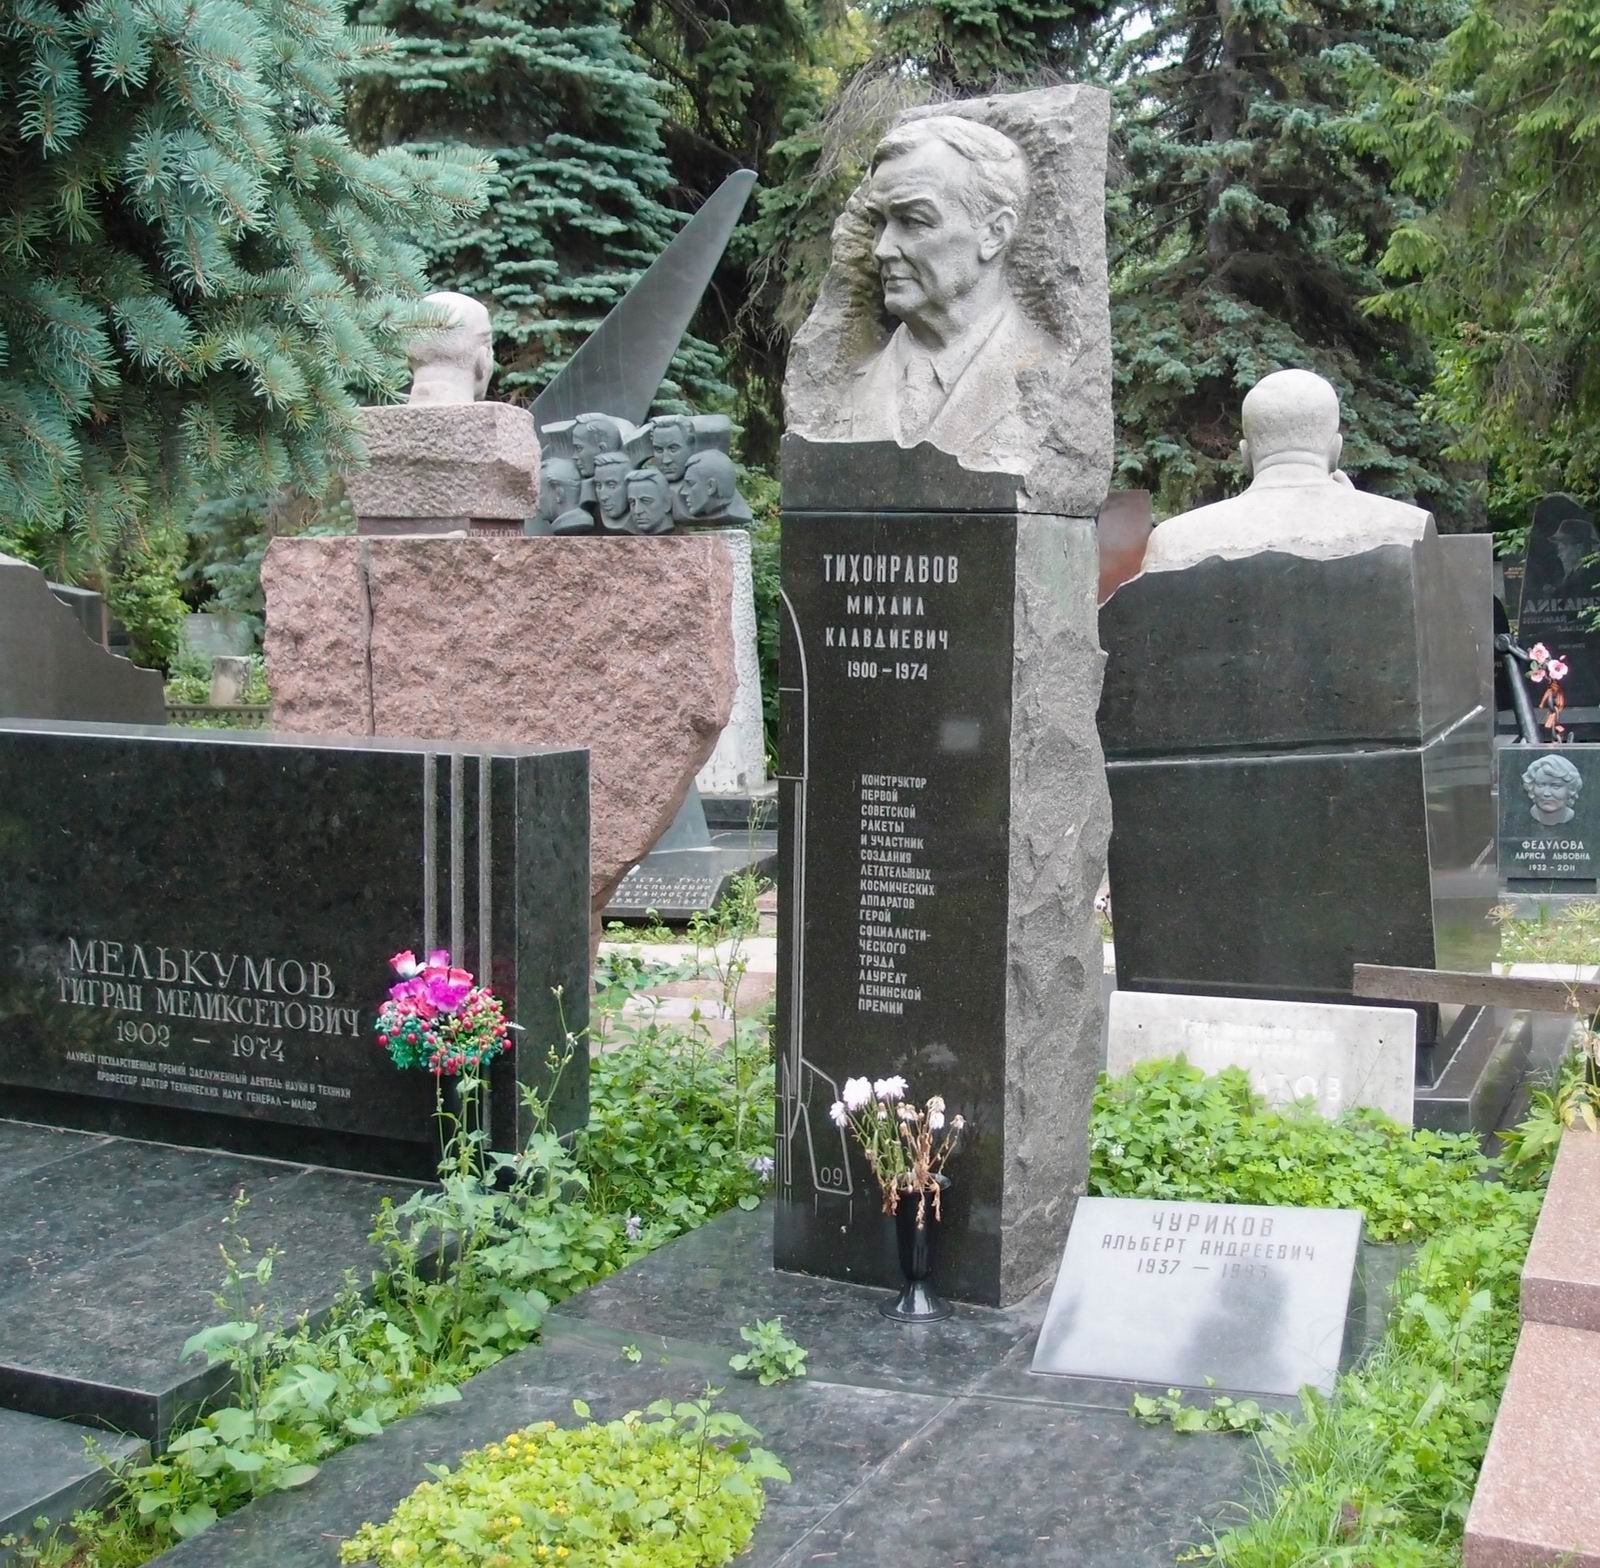 Памятник на могиле Тихонравова М.К. (1900–1974), ск. С.Пилипер, арх. Л.Маковский, на Новодевичьем кладбище (7–8–16).